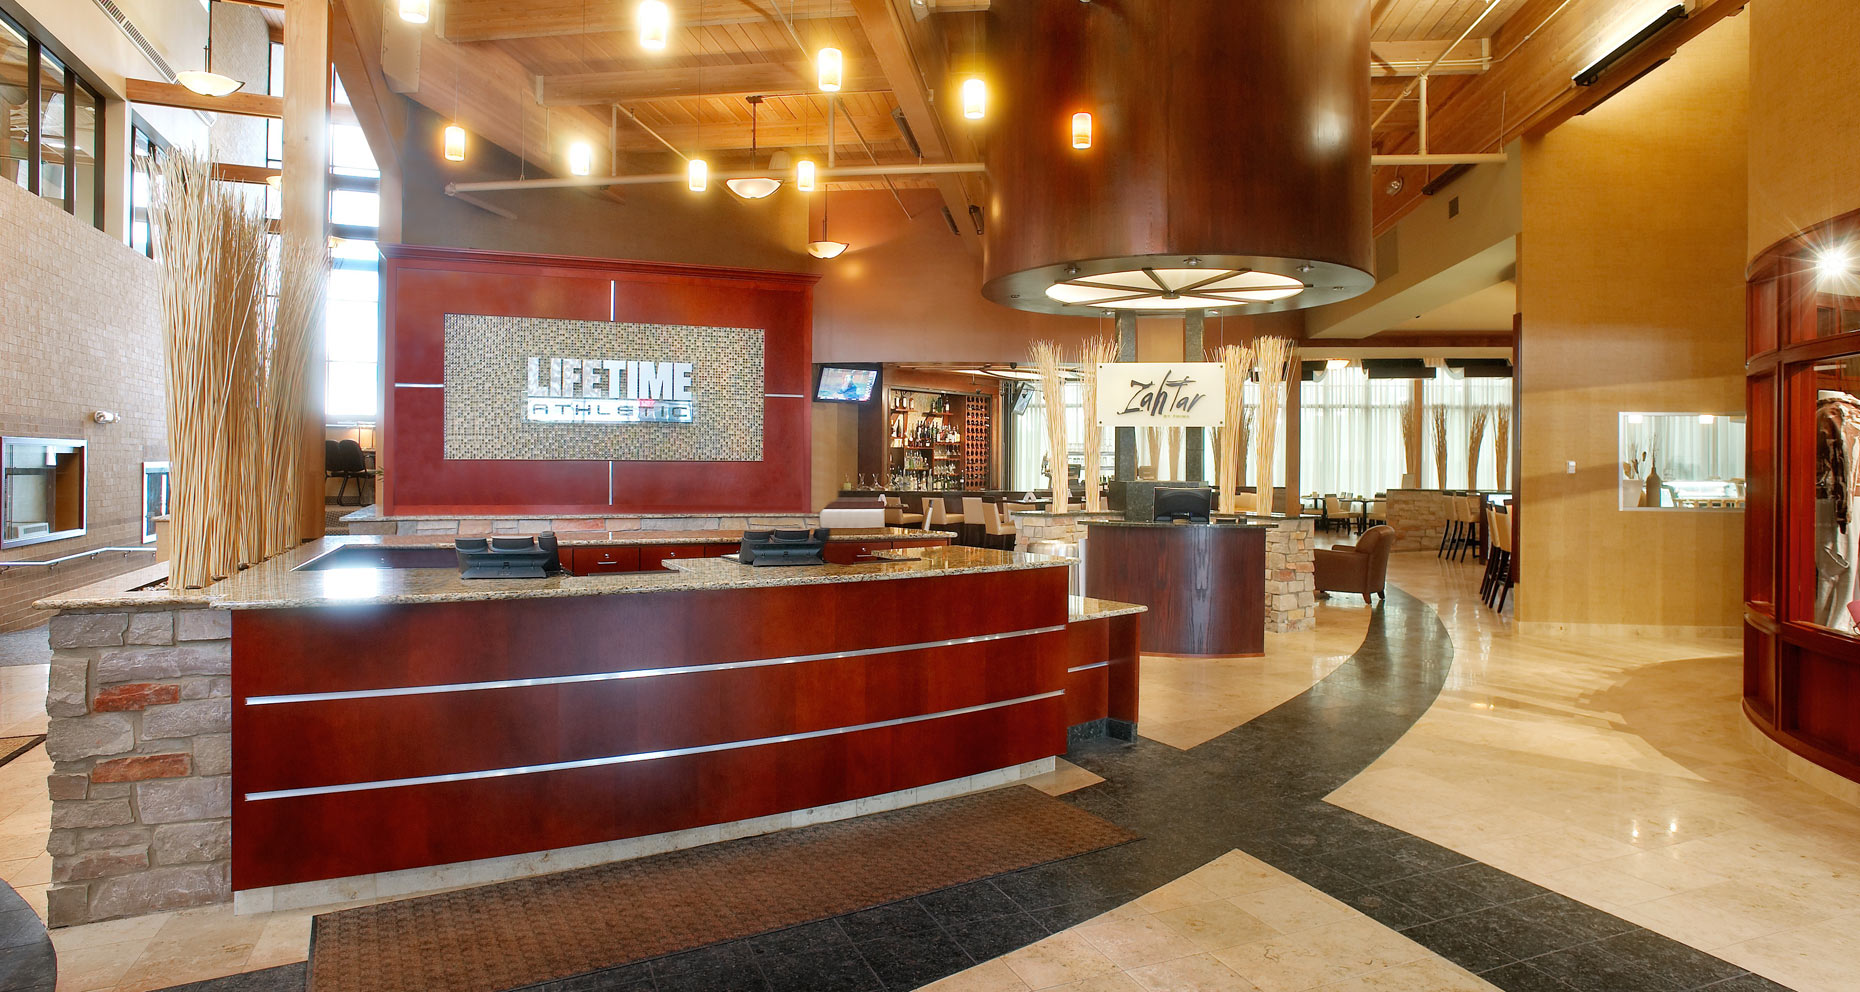 Lifetime Fitness interior/concierges desk/architectural photo